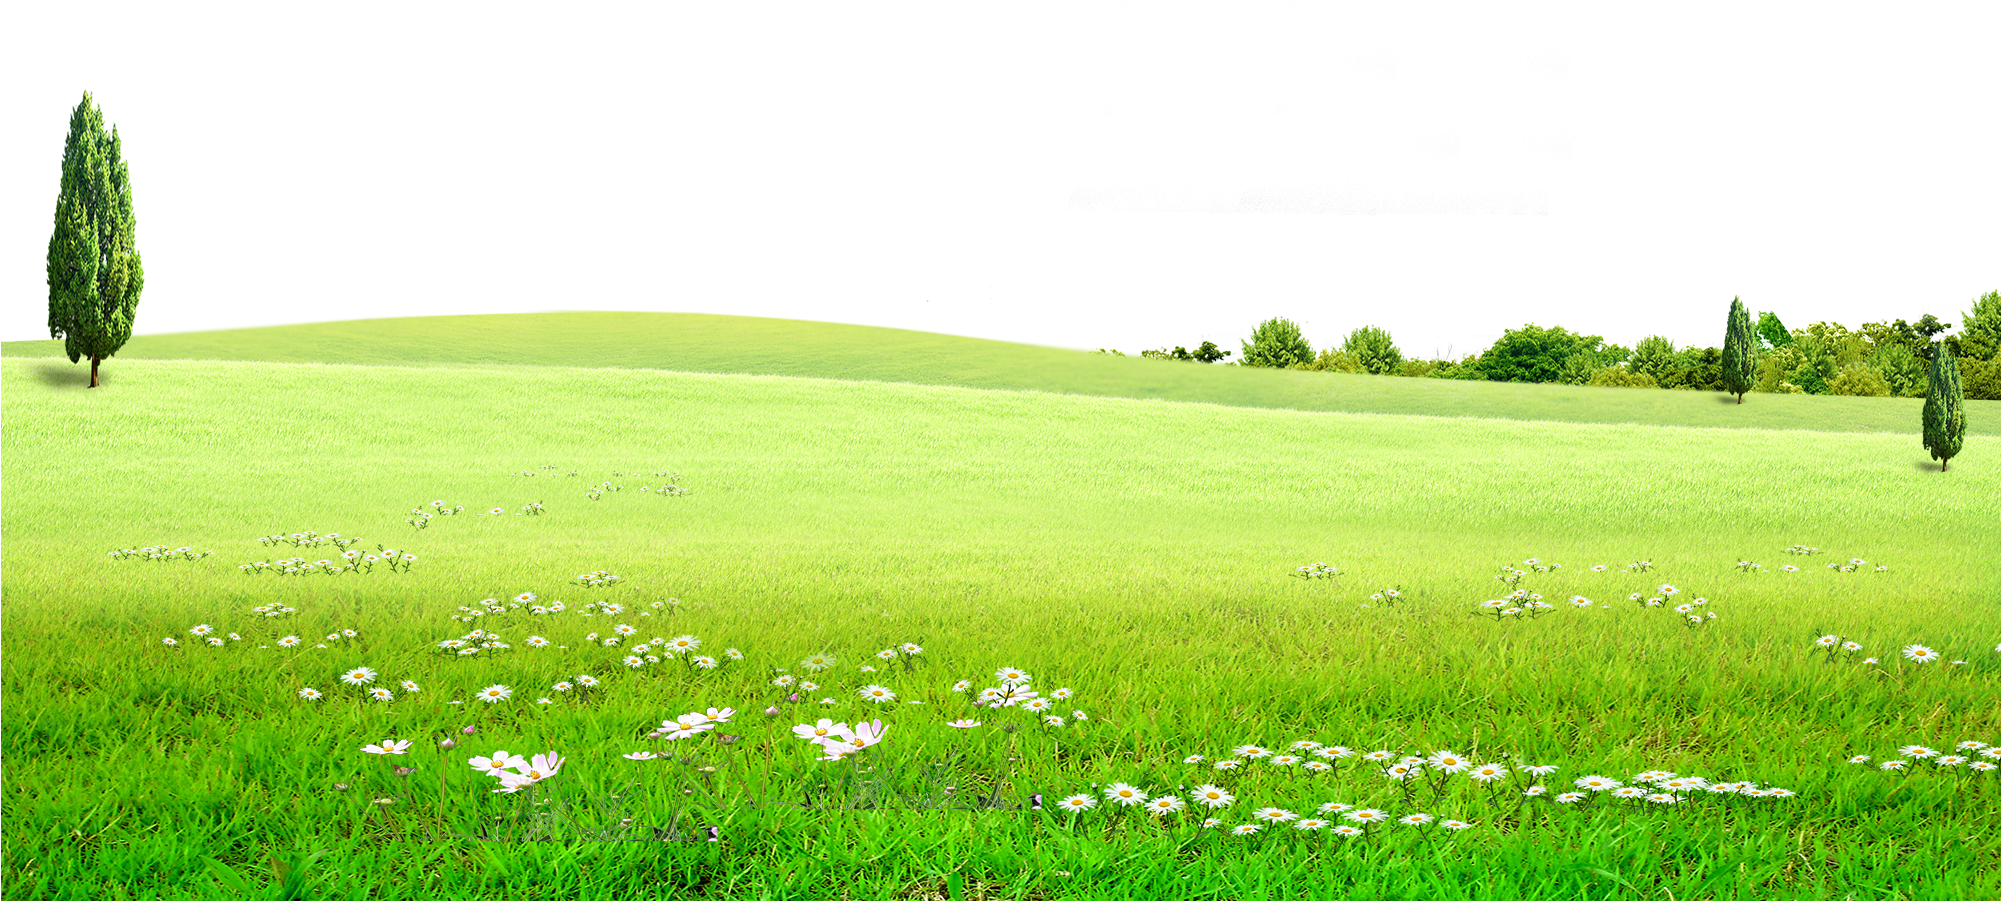 Пейзажное зеленое поле PNG Image